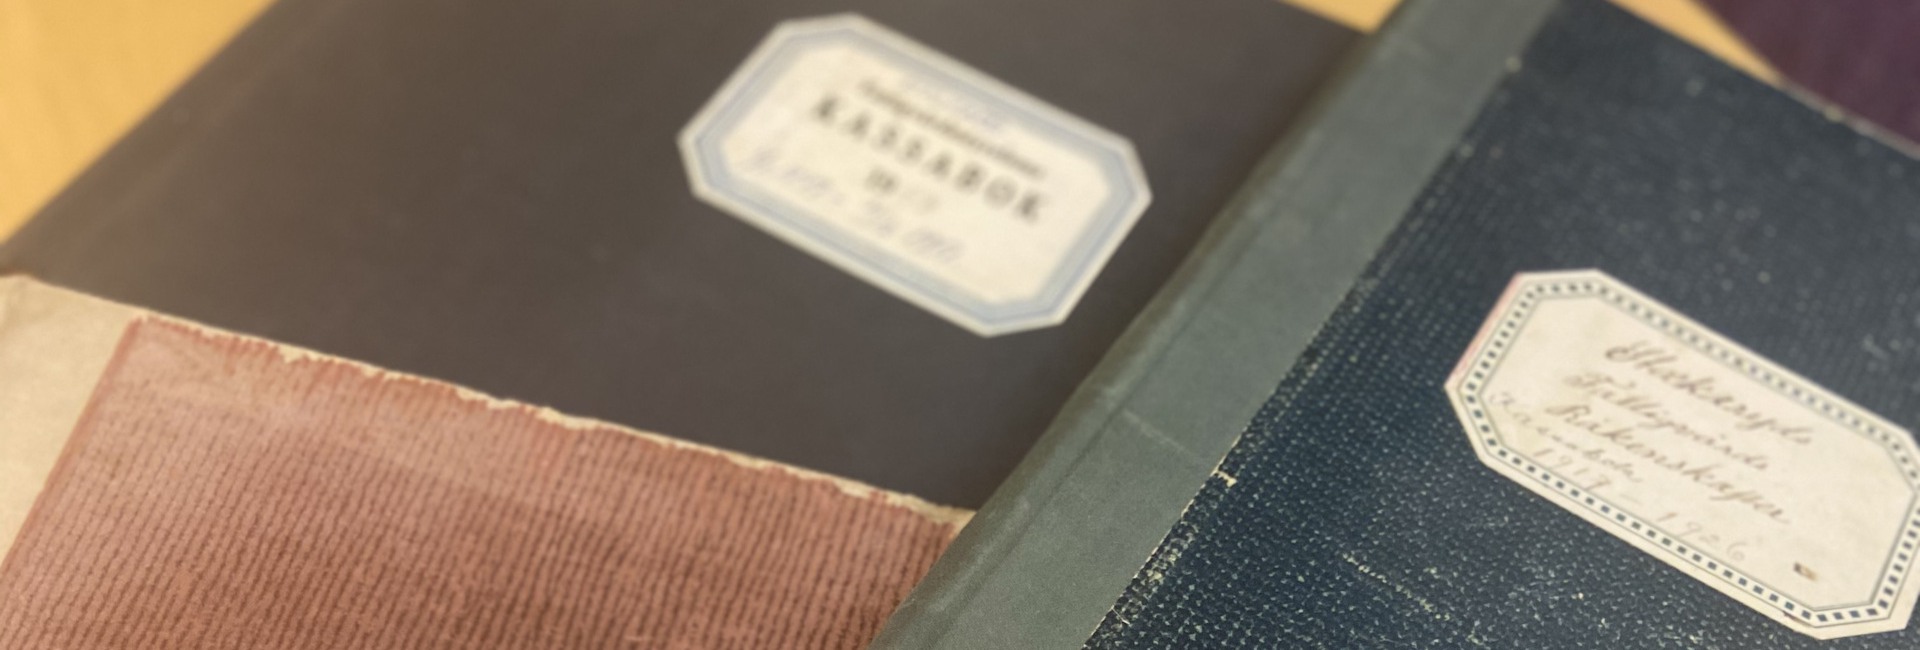 Tre gamla böcker i svart, blått och rött ligger på ett bord. Bilden är avskuren. Etiketterna är suddiga och därmed svåra att läsa ut. En bok är en gammal kassabok från 1940-talet.